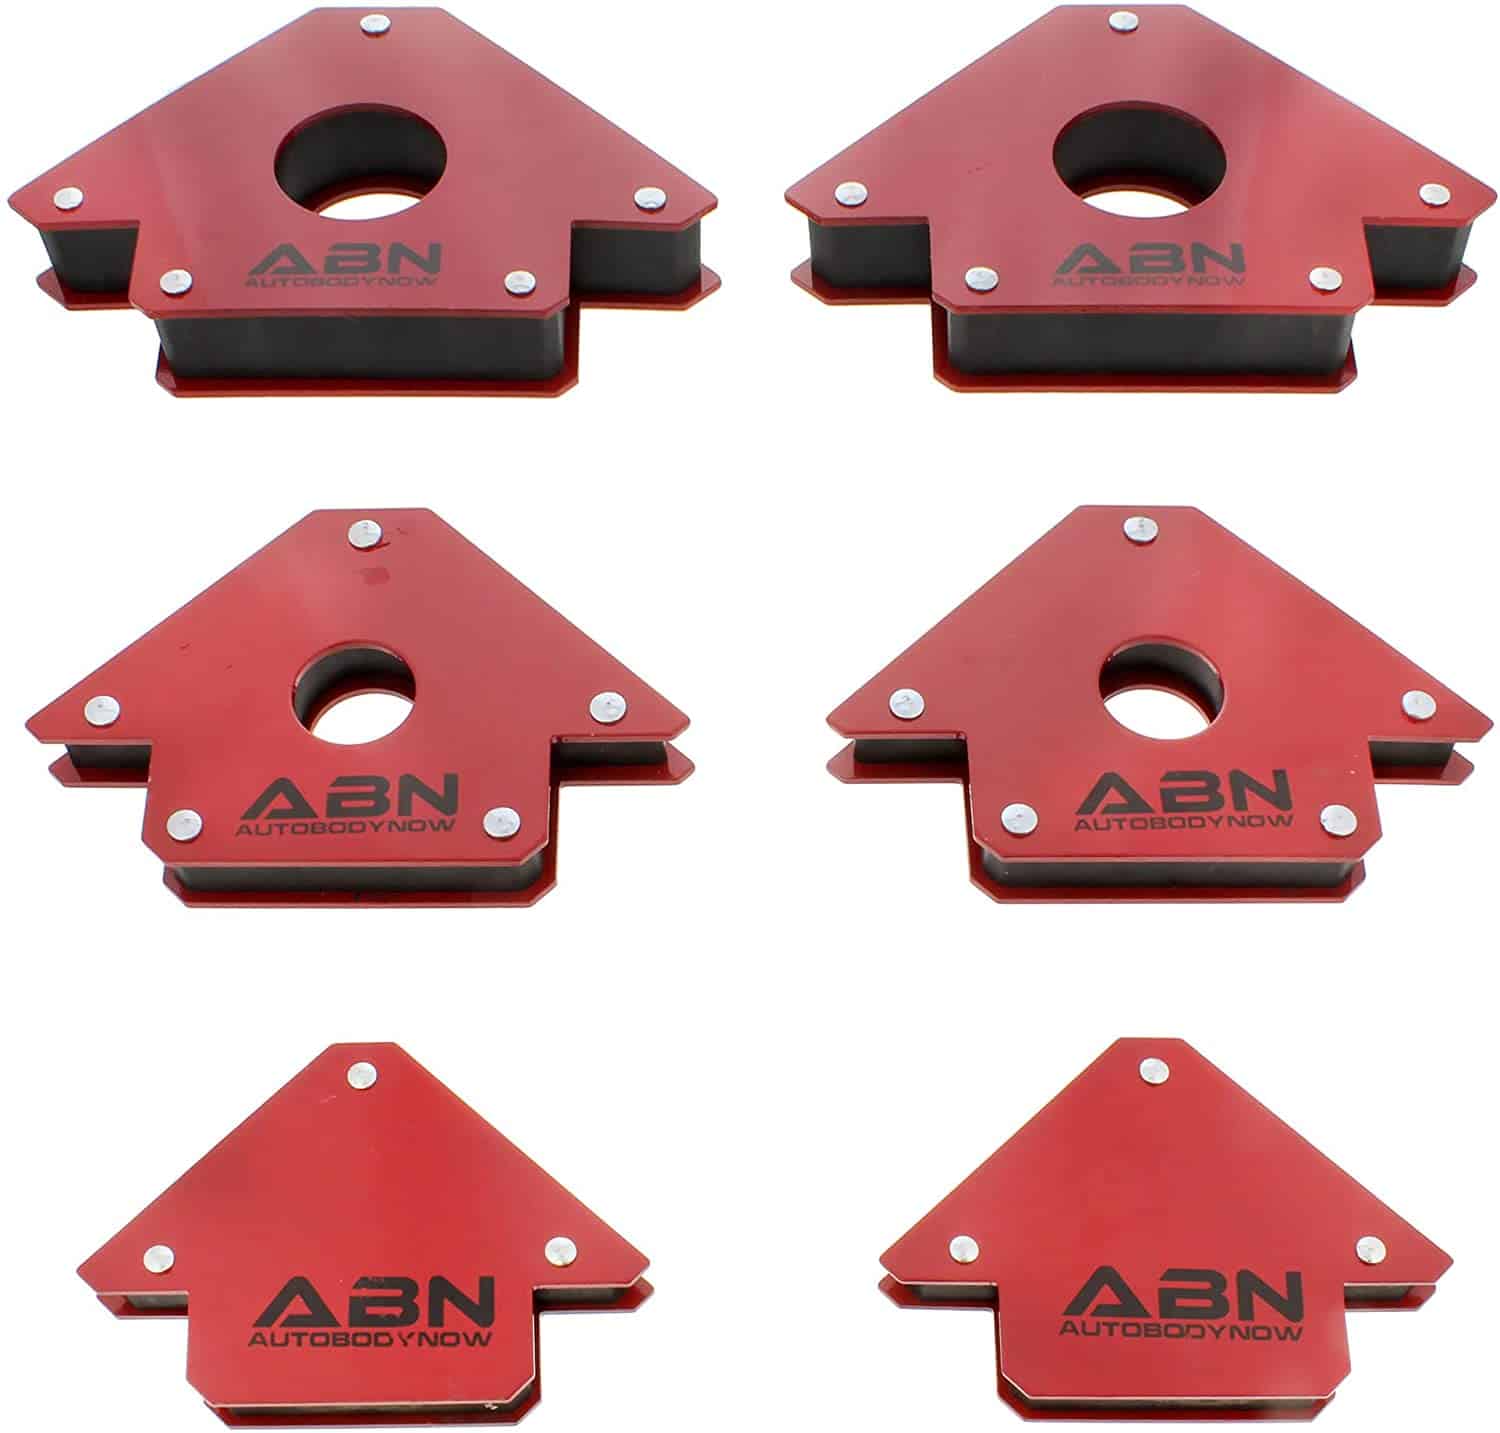 Beste pijlvormige lasmagneet - ABN Arrow Welding Magnet set